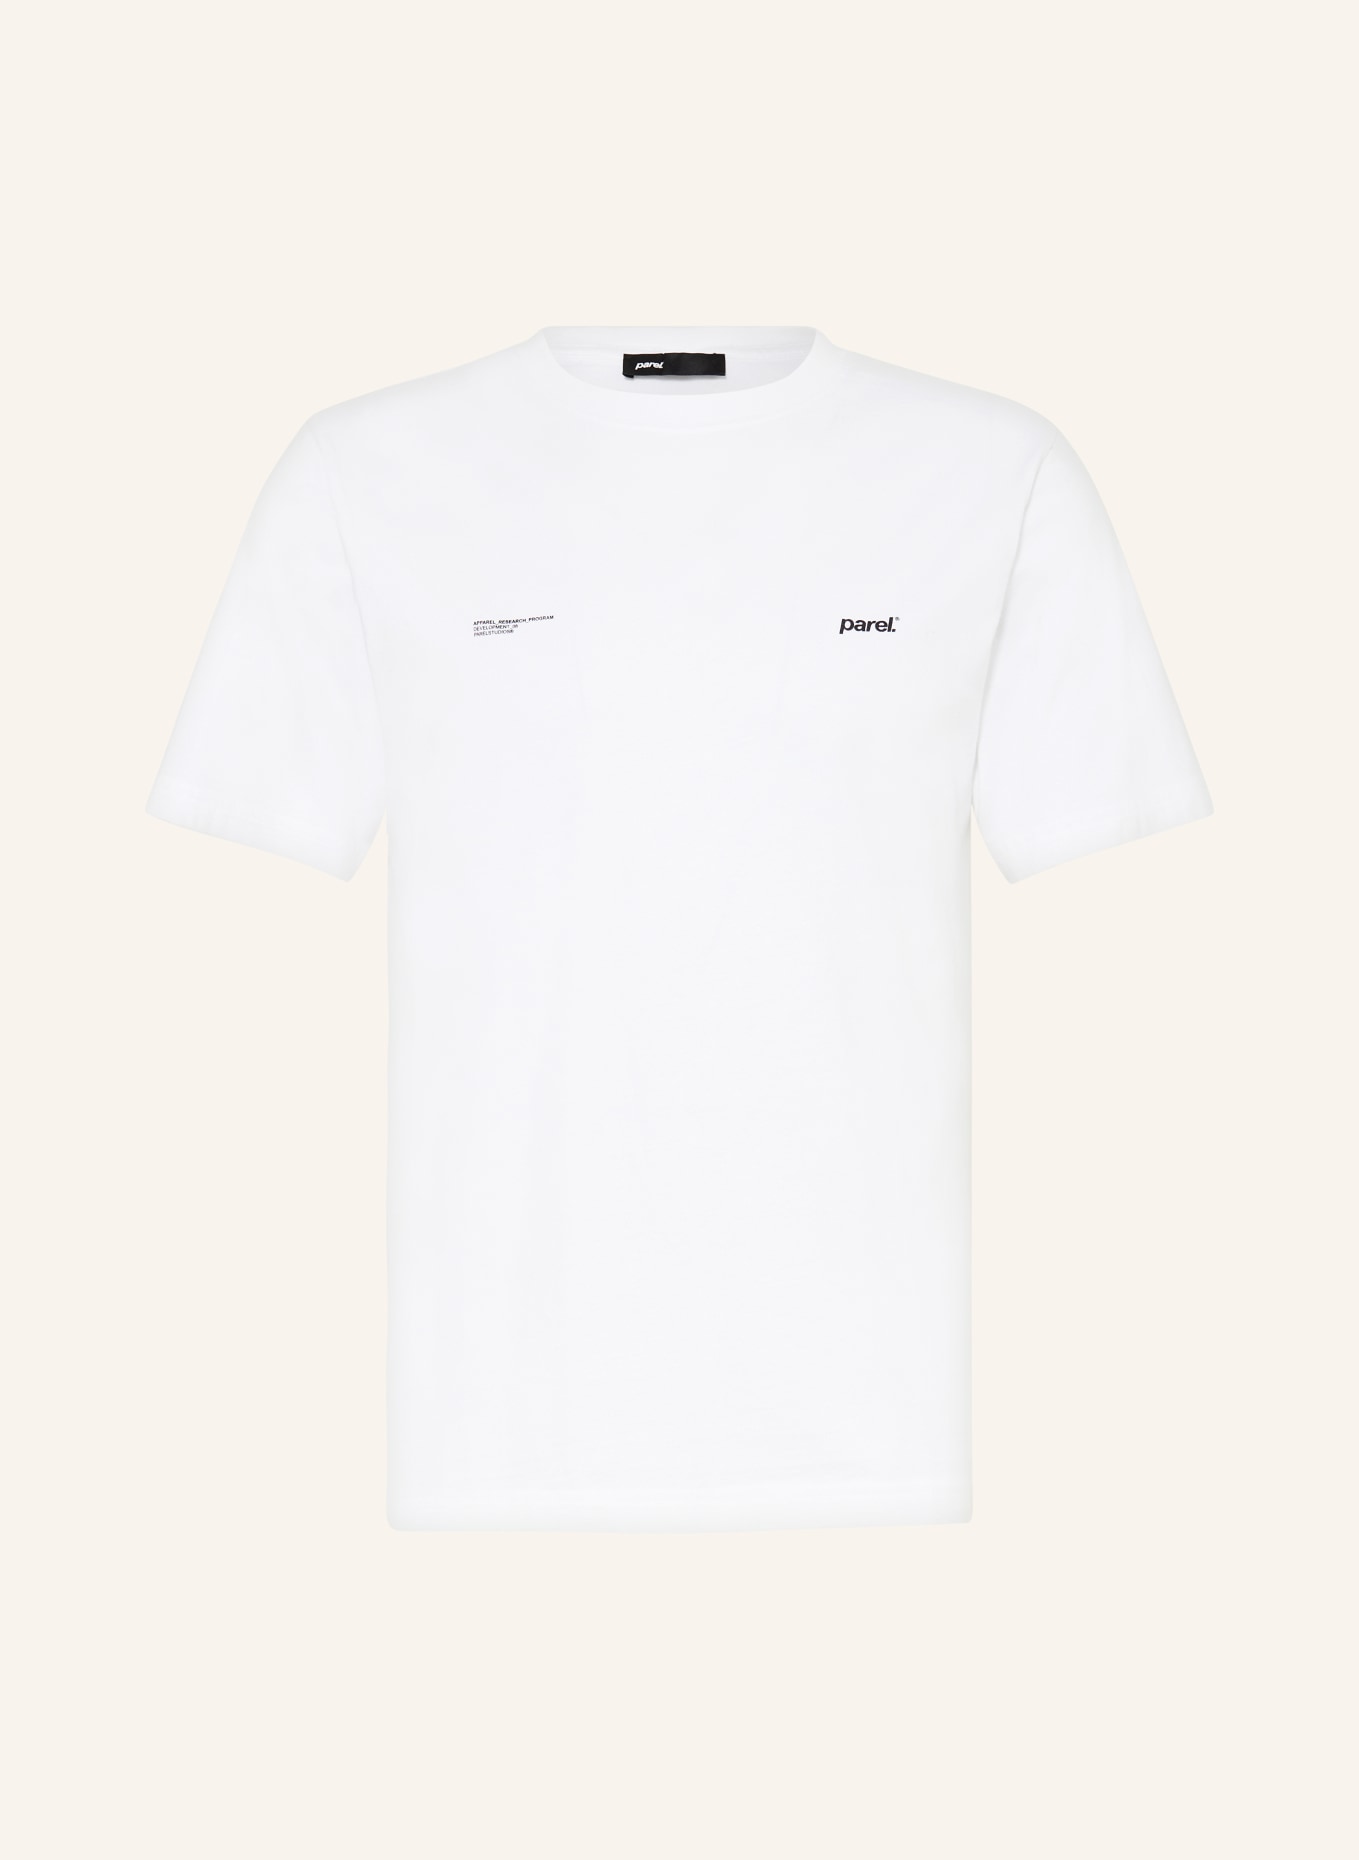 parel. T-shirt, Color: WHITE (Image 1)